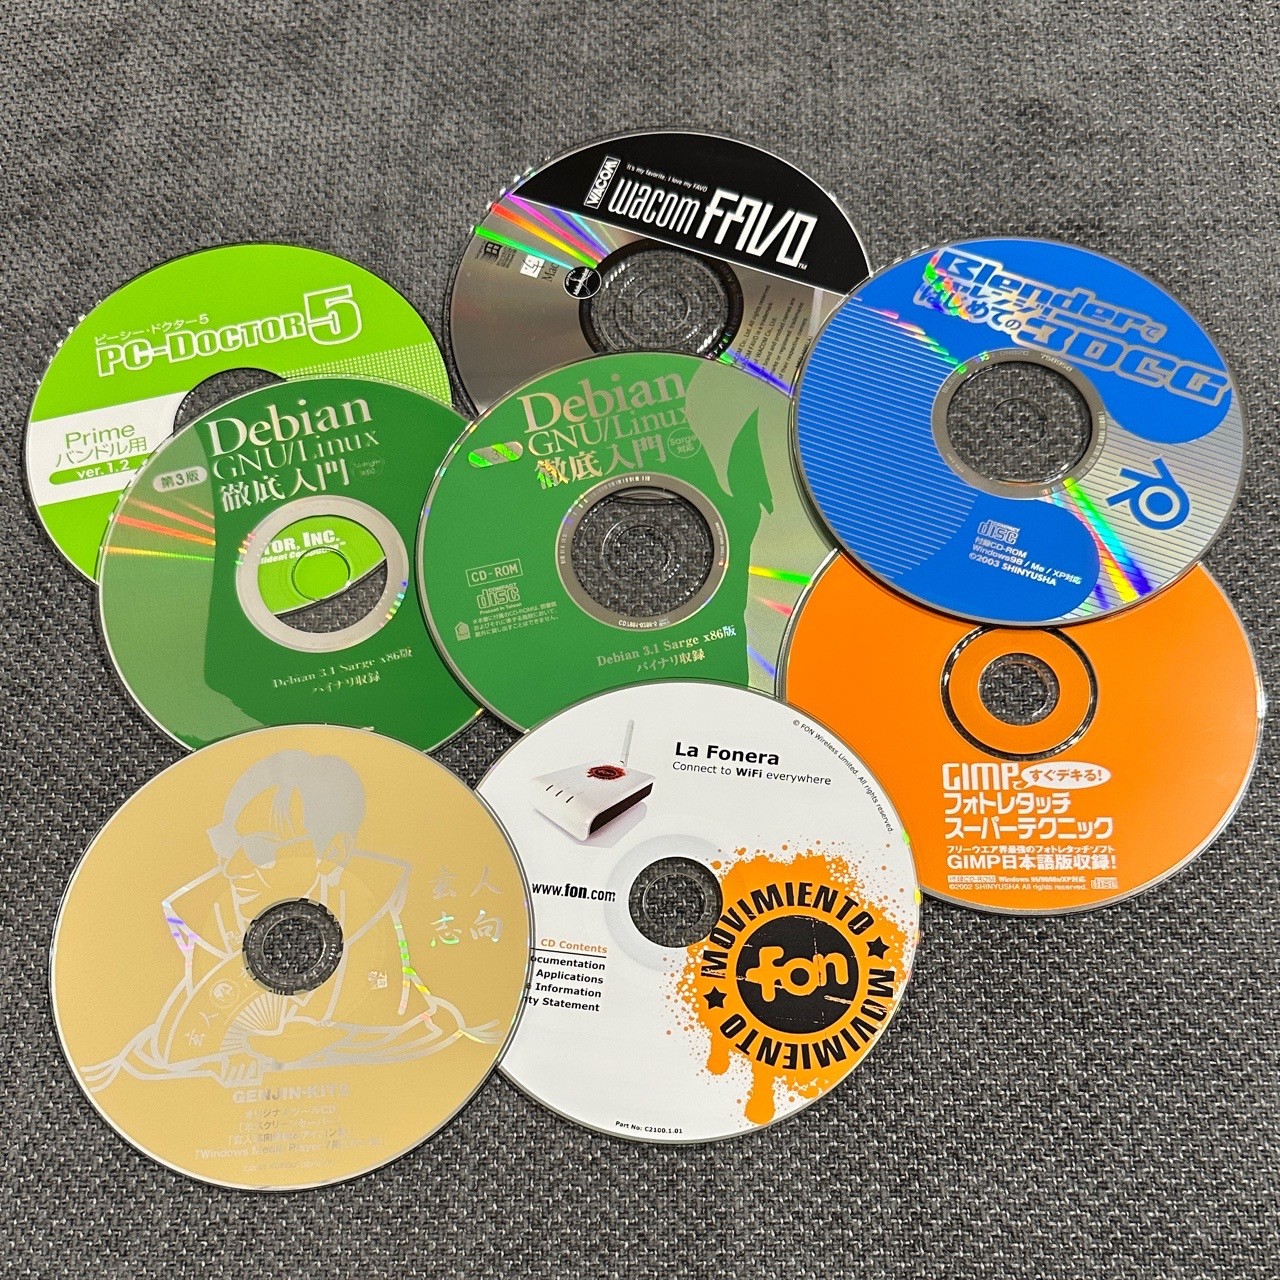 さすがに Debian 3.1 をインストールすることはもうないかな。玄人志向、La Fonera、Wacom FAVO、PC-Doctor、Blendber、GIMP 関連の CD-ROM。